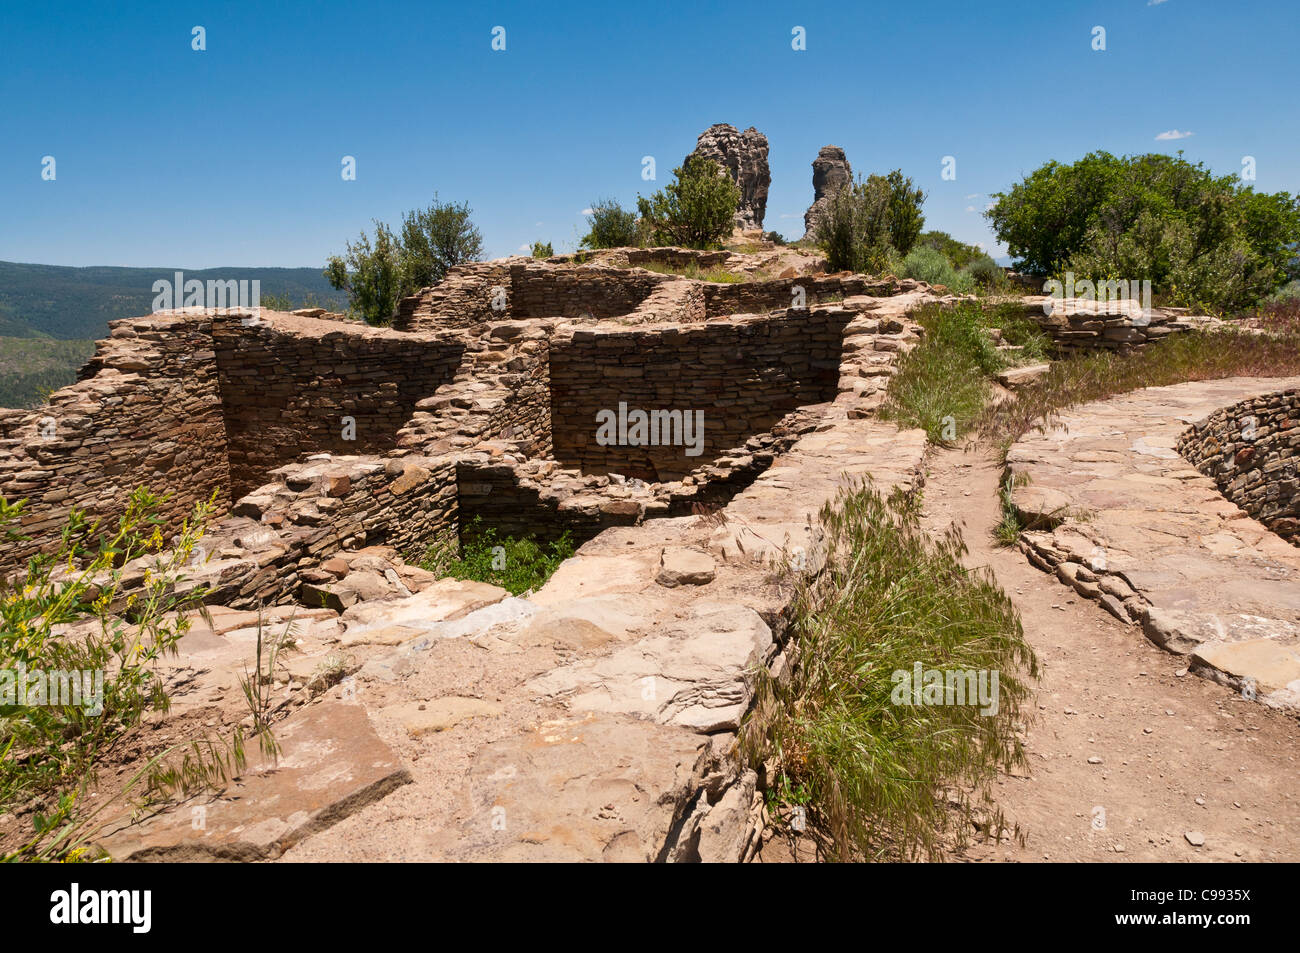 Grande maison Pueblo, Chimney Rock, Zone Archéologique de Pagosa Springs, Colorado. Banque D'Images